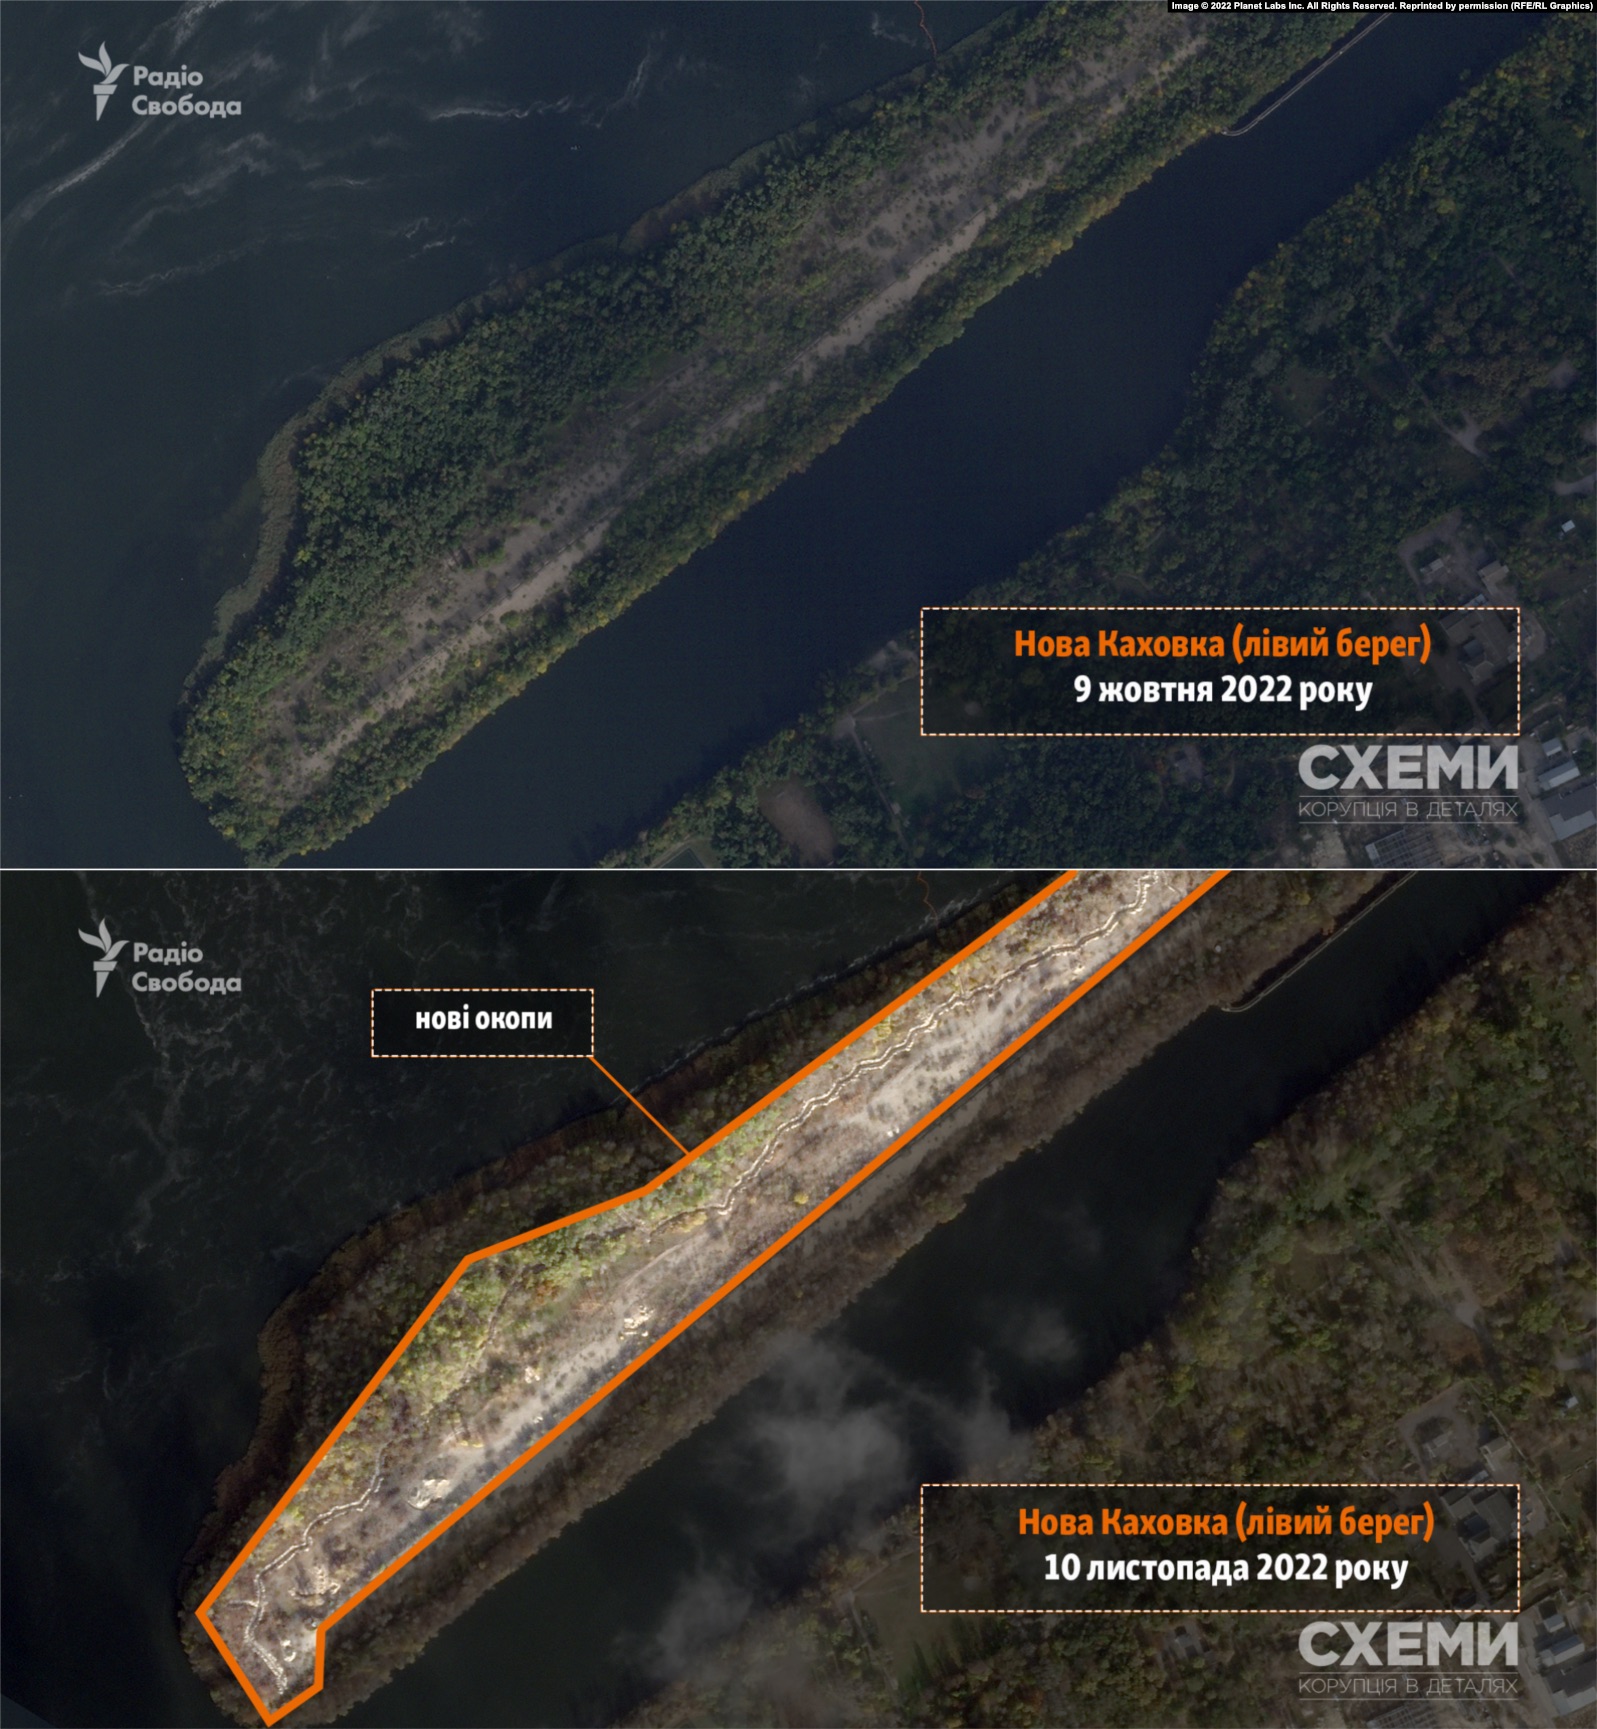 Армия России вырыла окопы на левом берегу Днепра в Херсонской области: спутниковые фото